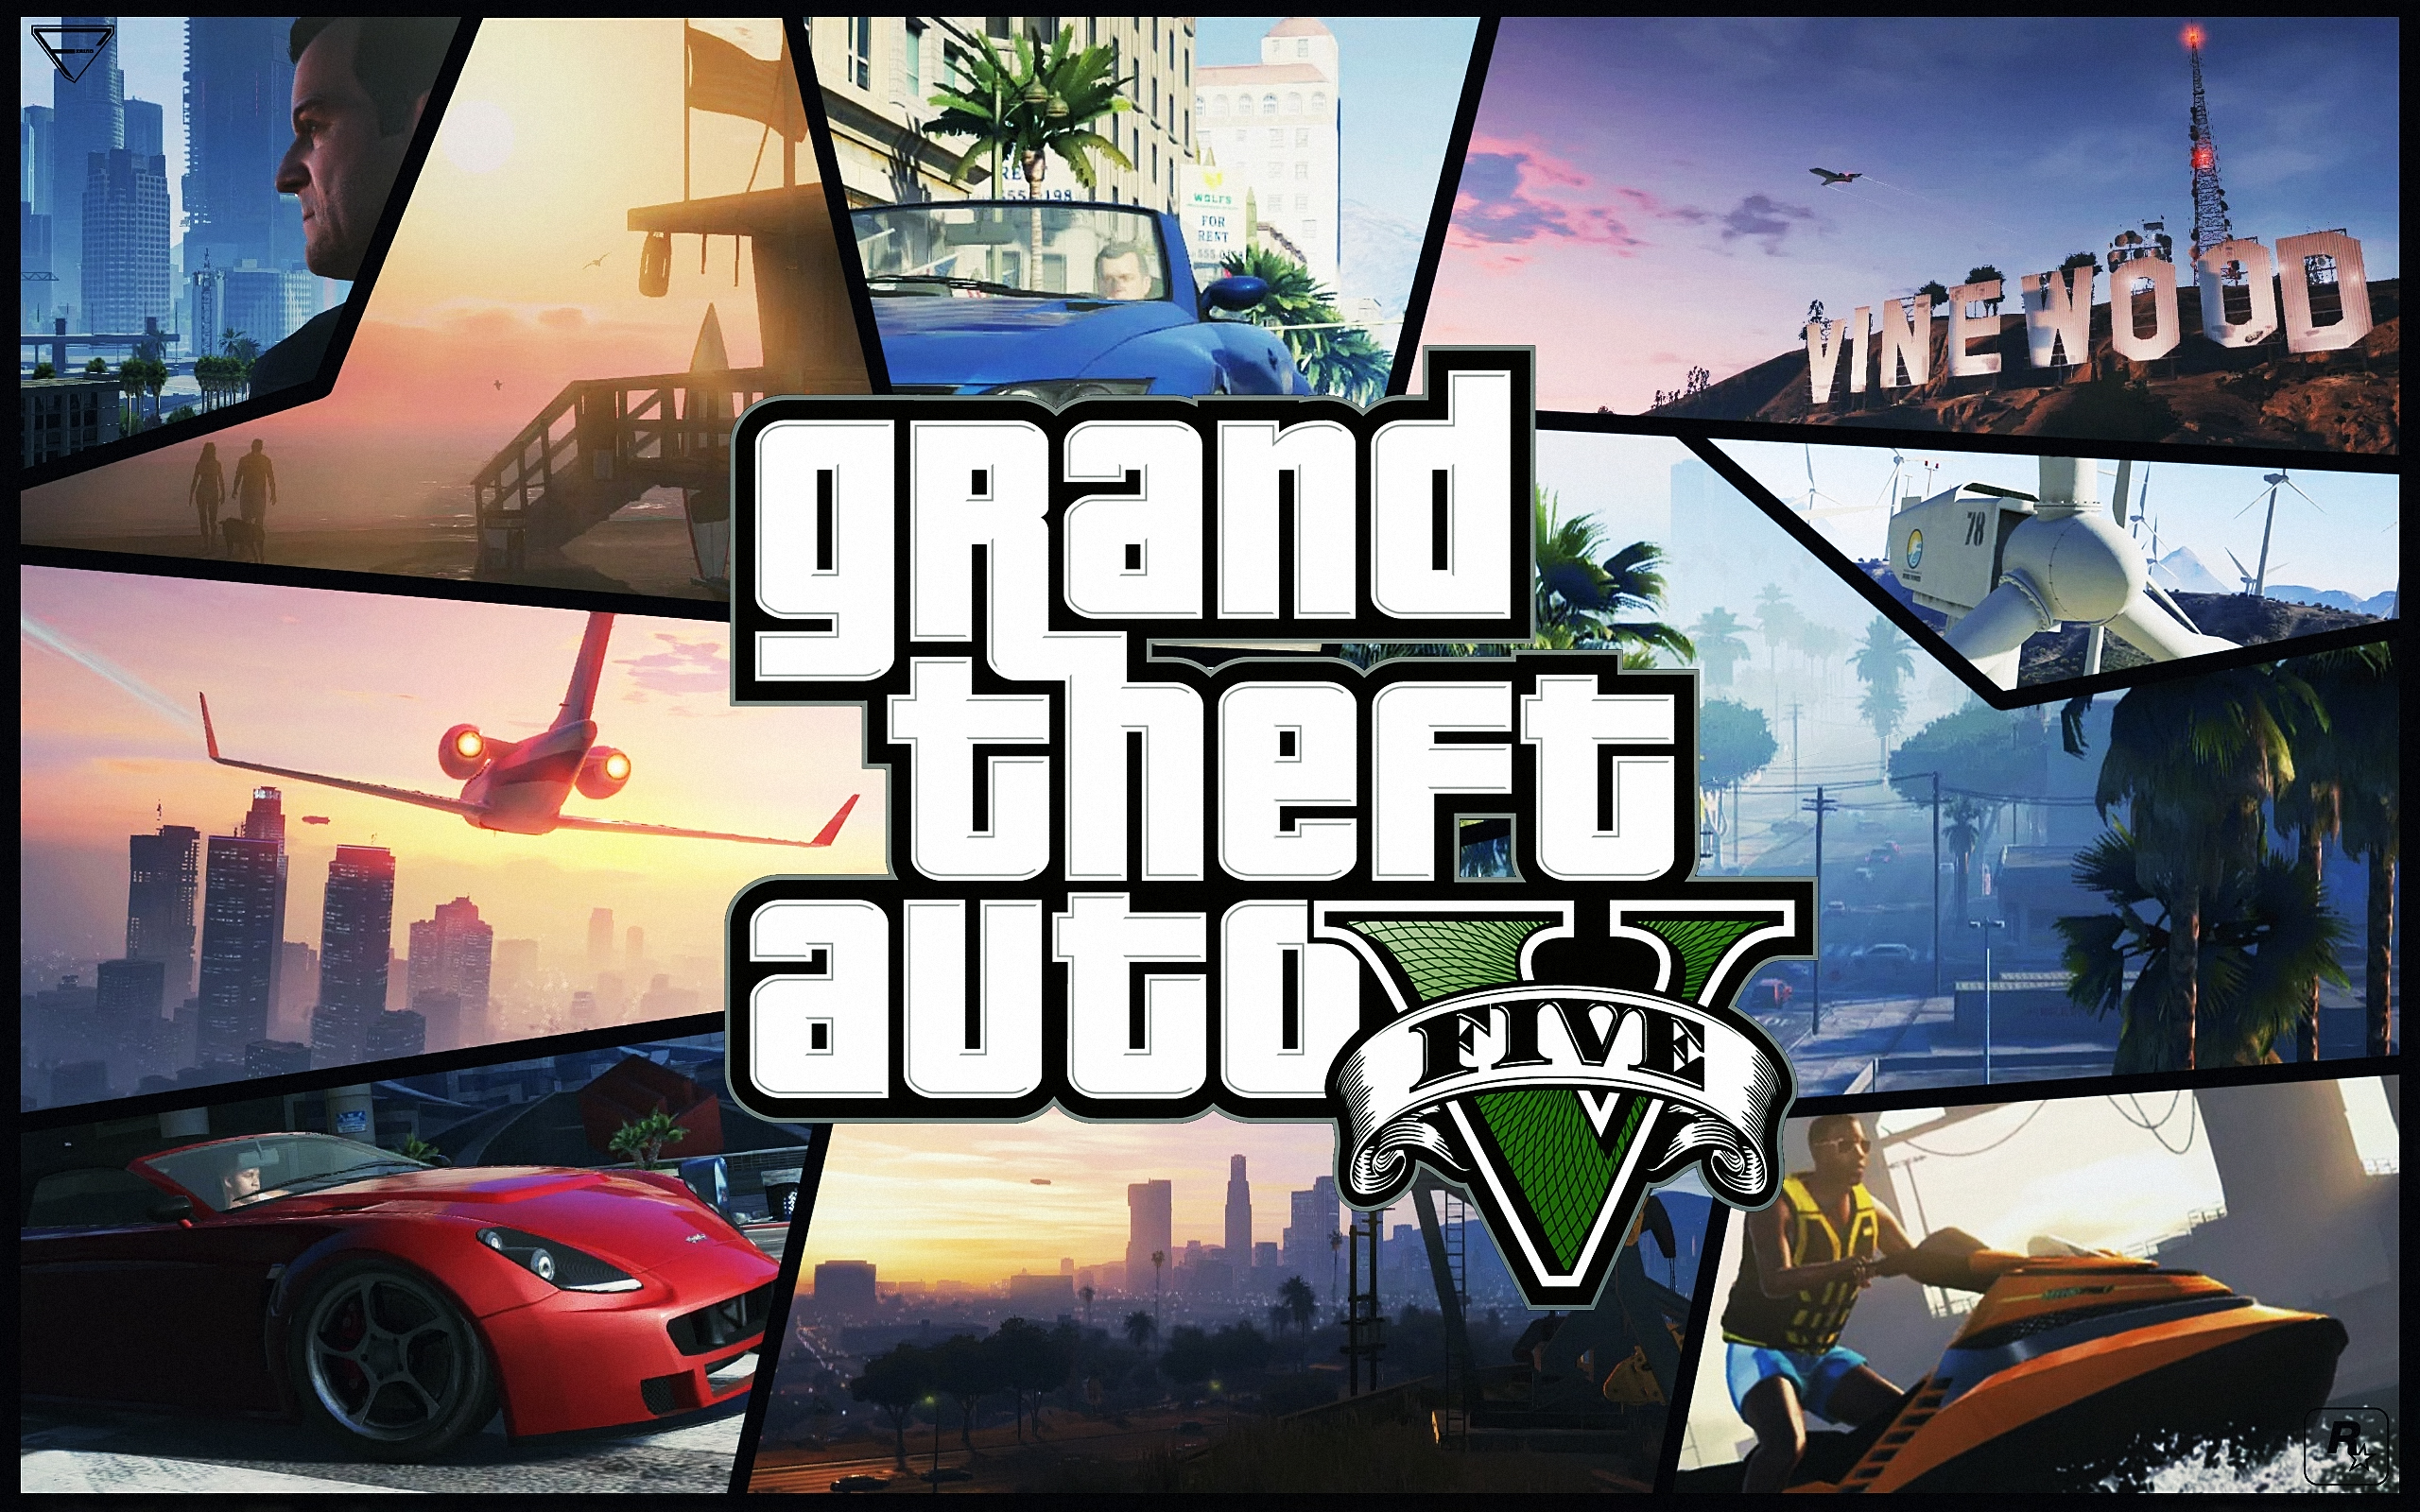 Que Movimentou Muito Suas Visitas O Motivo Grand Theft Auto V Segundo